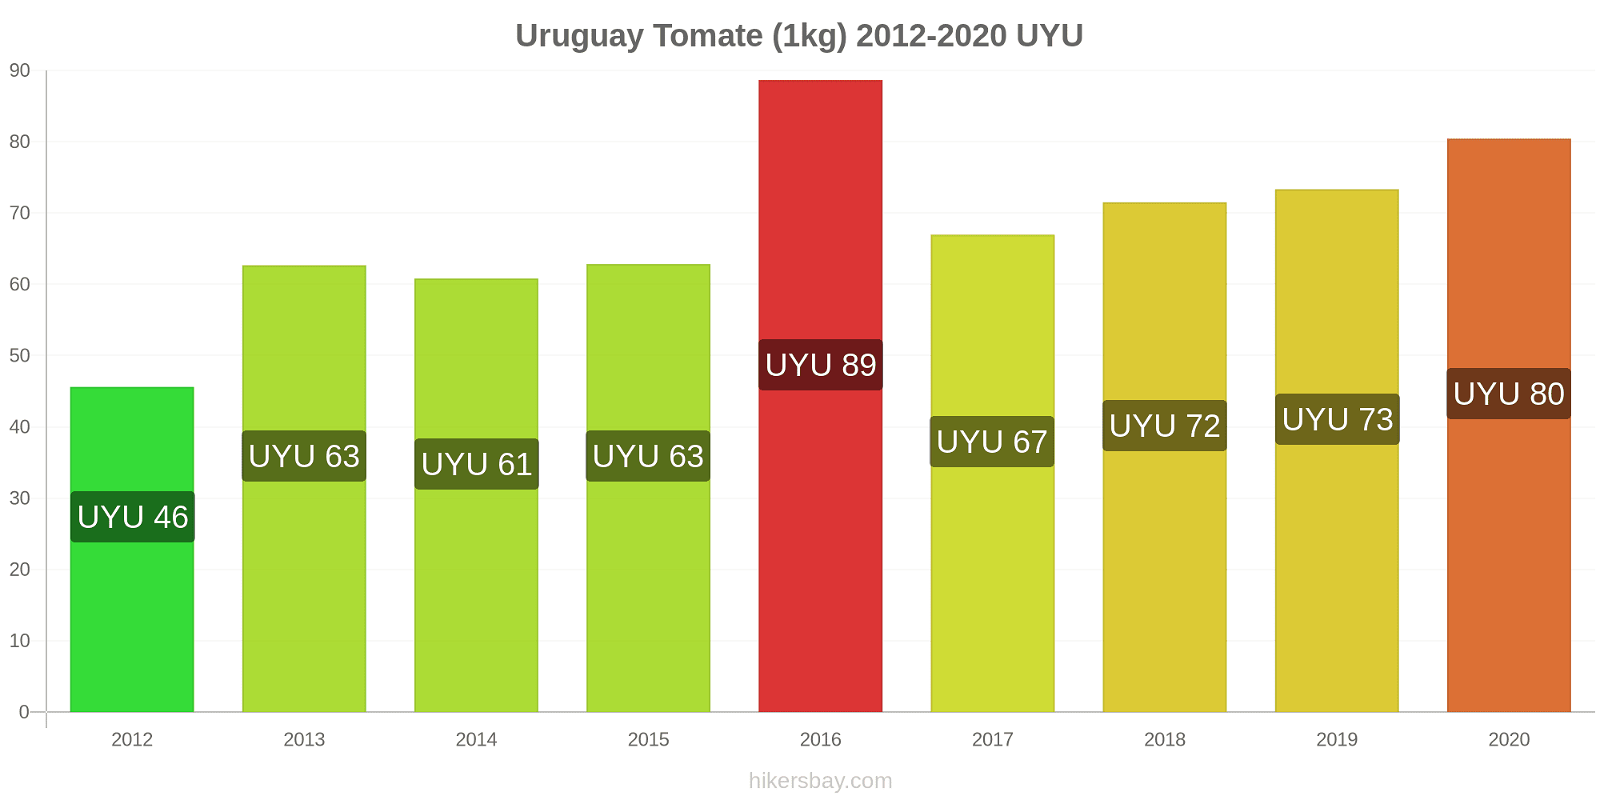 Uruguay cambios de precios Tomate (1kg) hikersbay.com